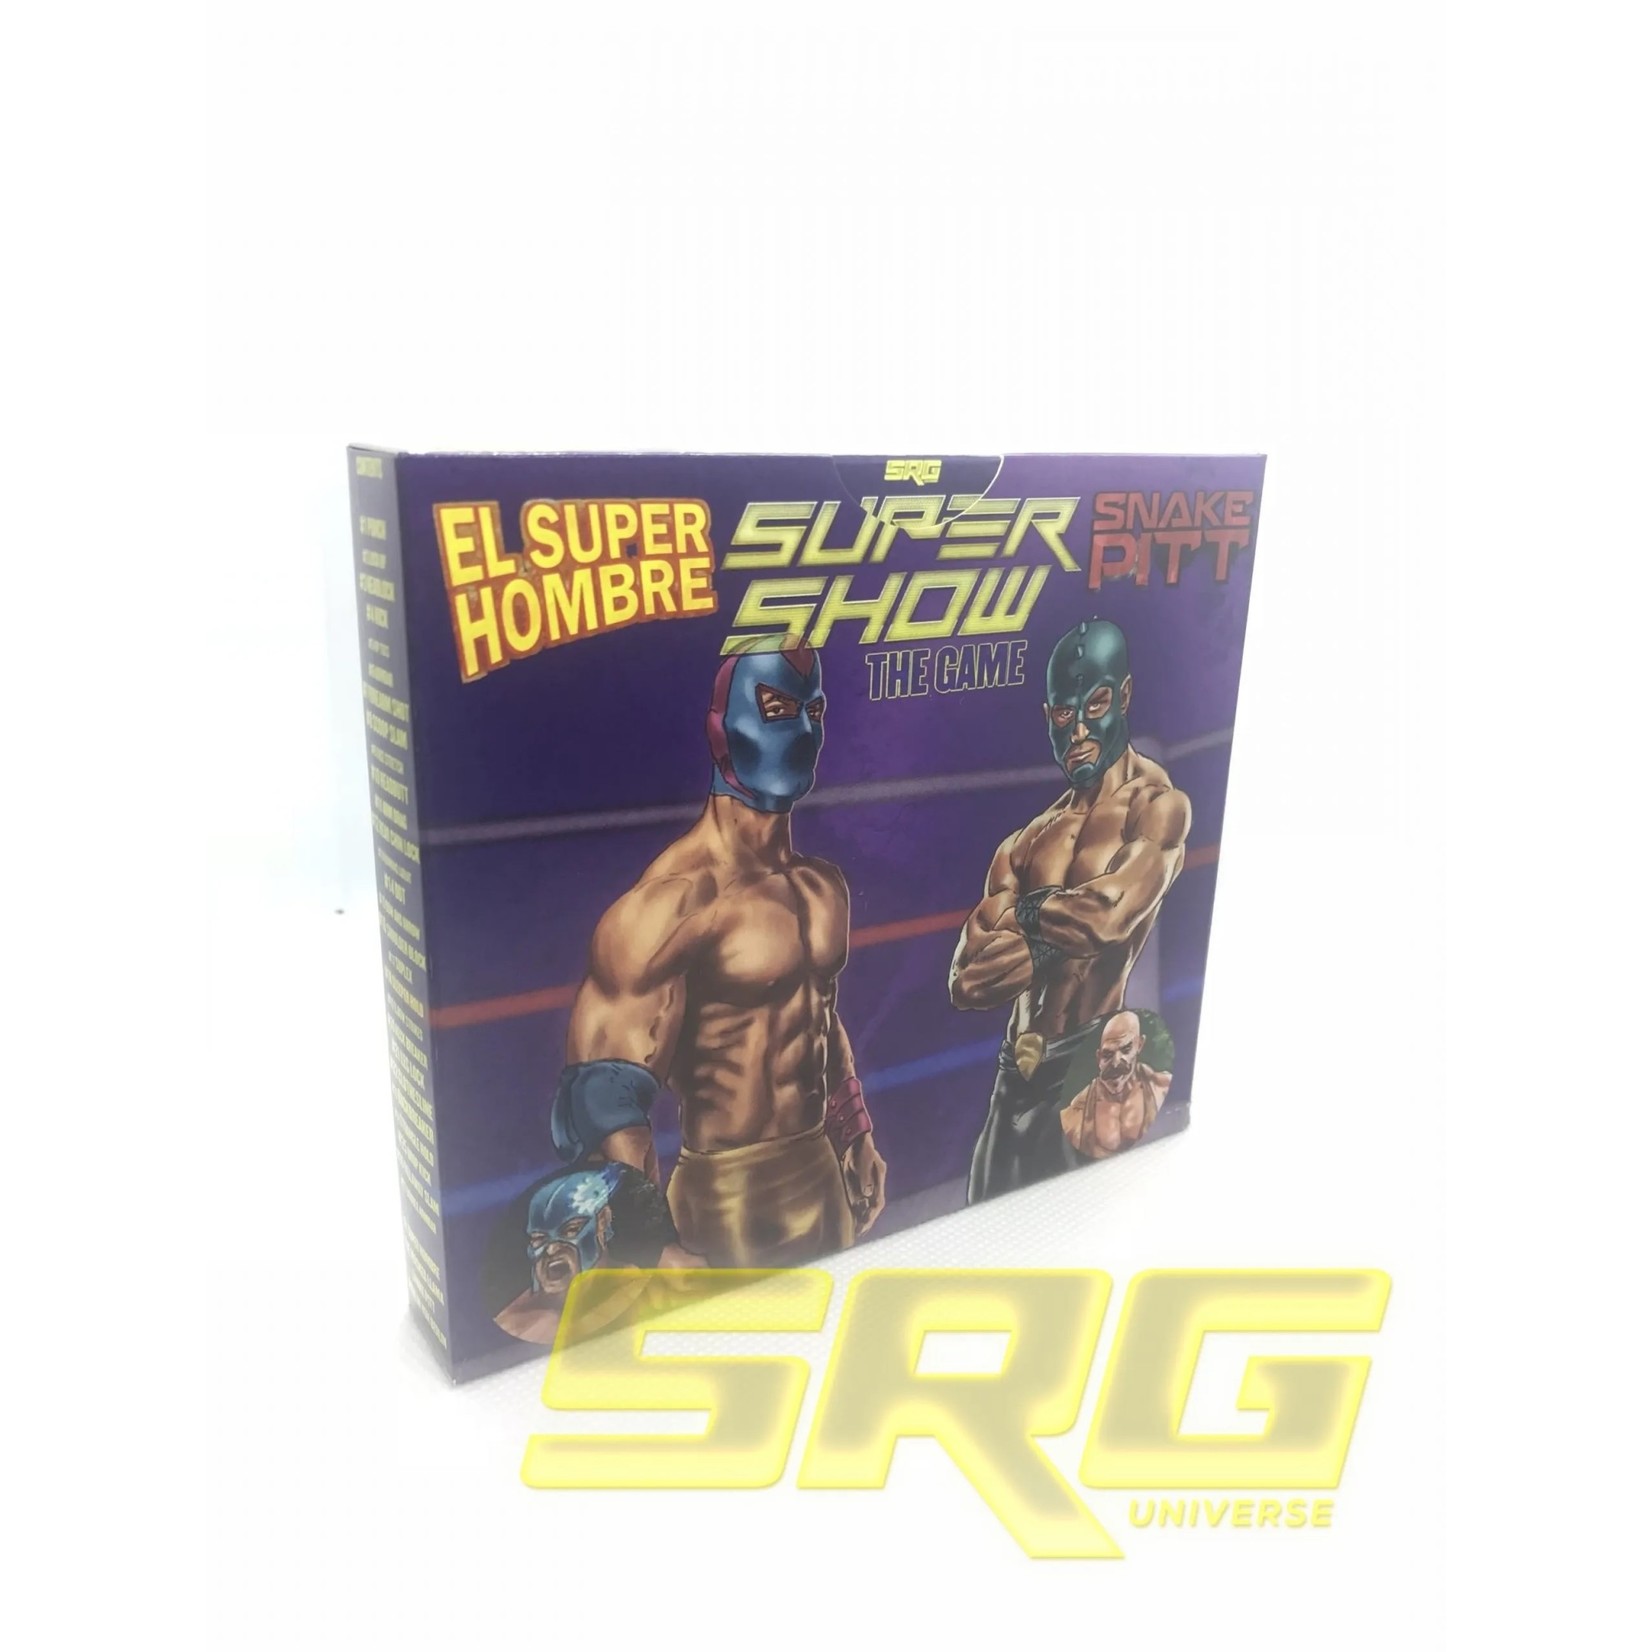 SRG El Super Hombre Snake Pit Supershow